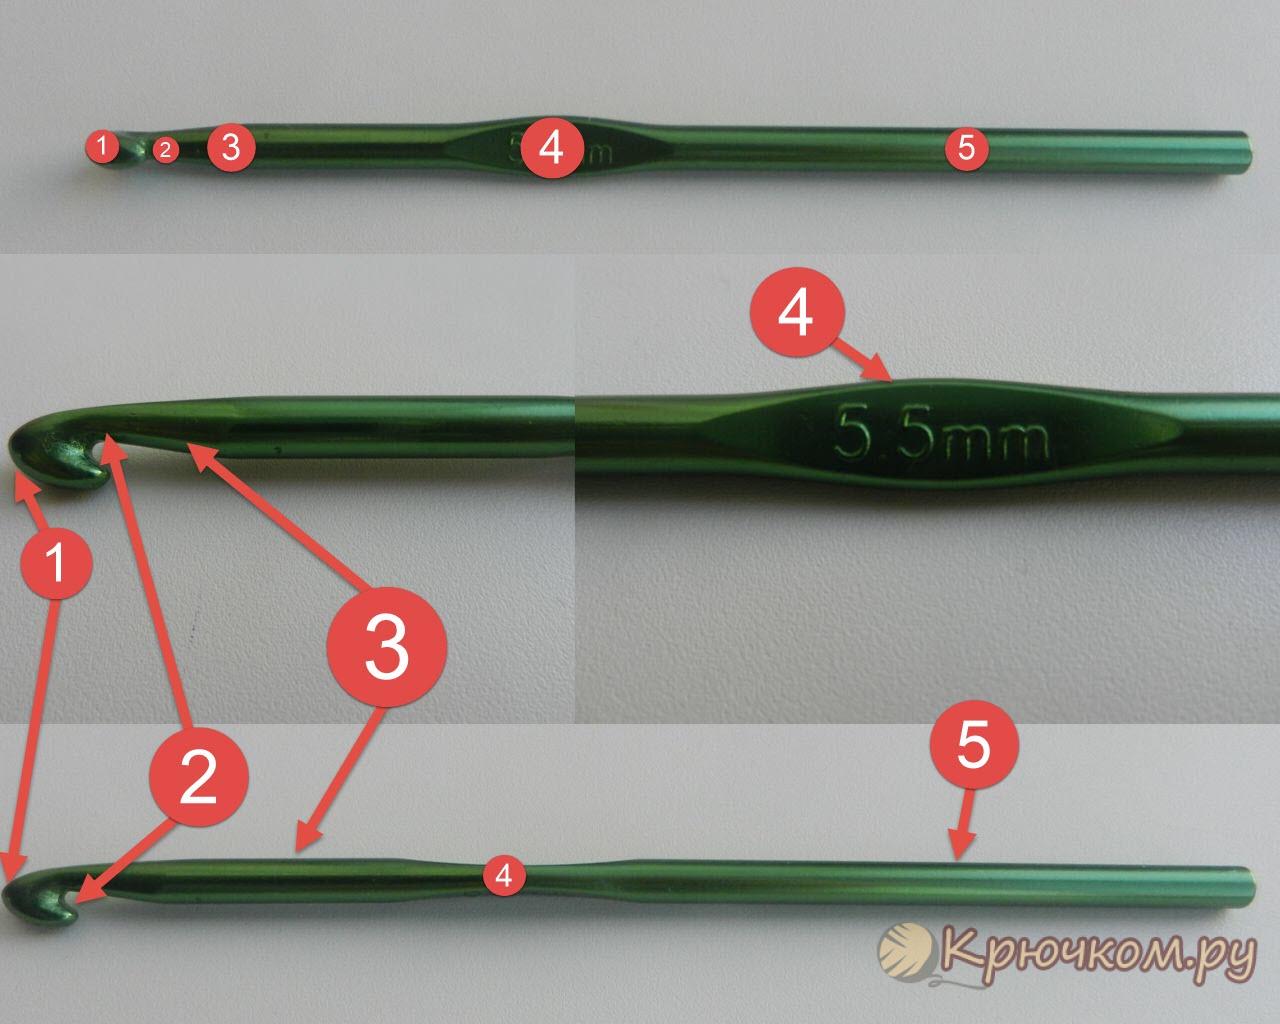 Как правильно держать крючок для вязания | Информация о приемах и техниках